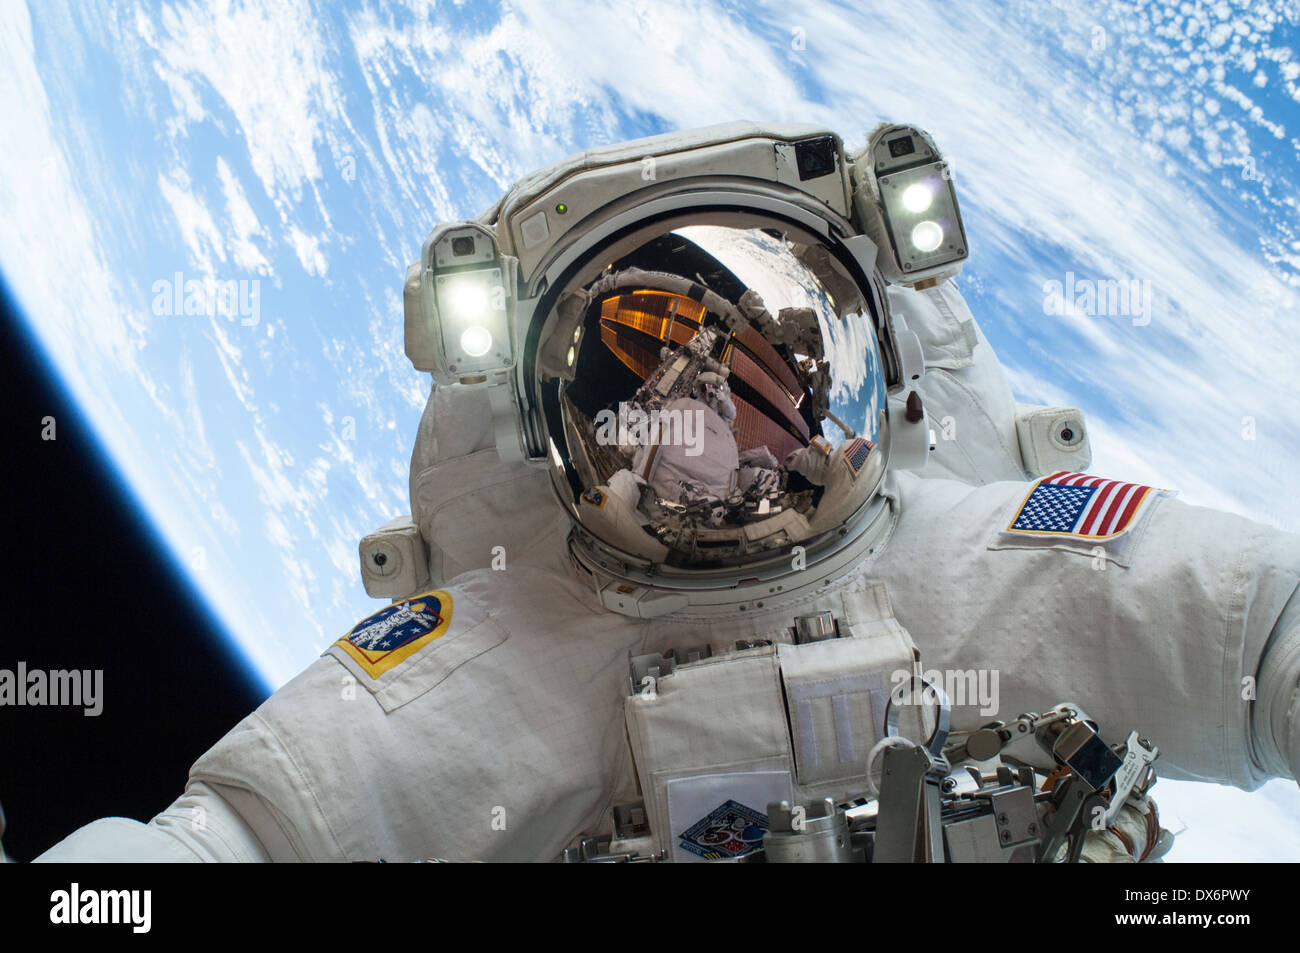 El 24 de diciembre de 2013, el astronauta de la NASA Mike Hopkins, ingeniero de vuelo de la expedición 38, participa en el segundo de los dos paseos espaciales Foto de stock